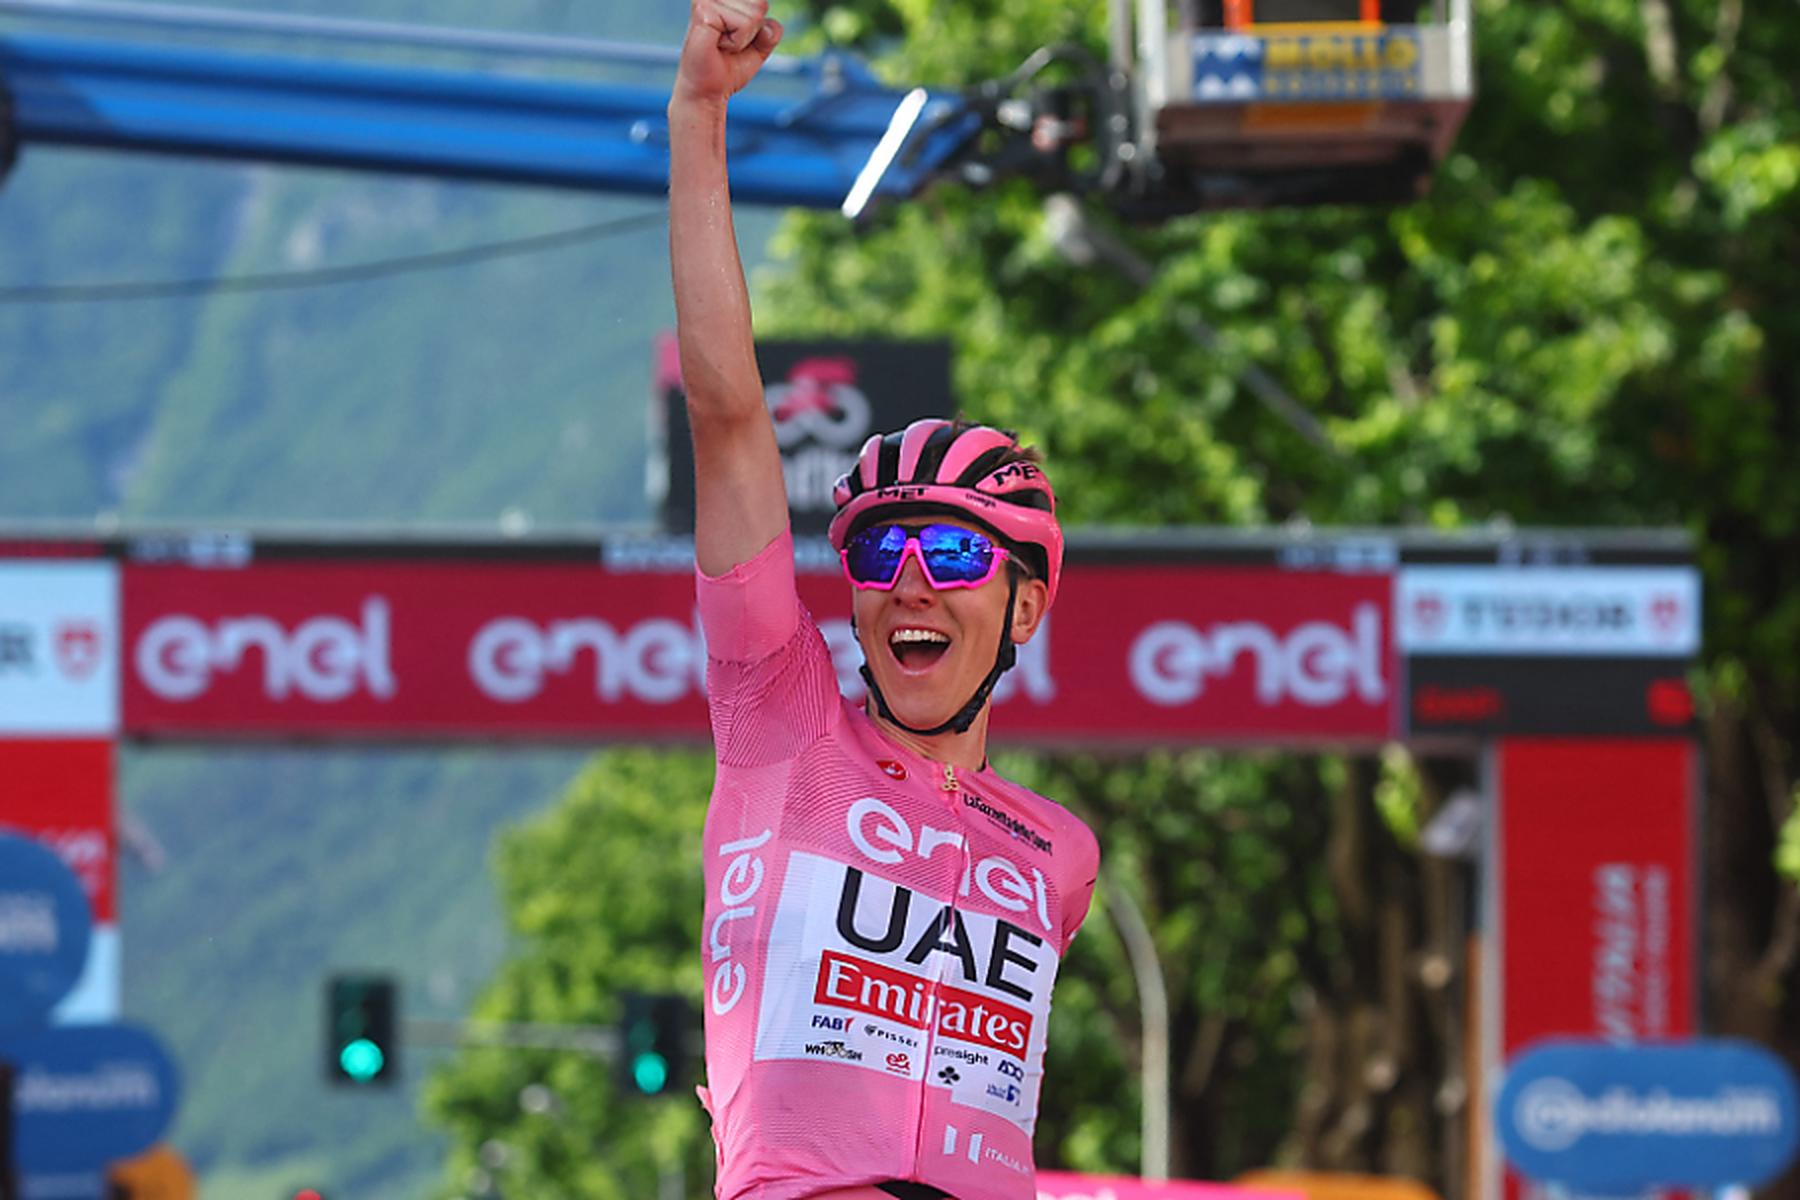 Bassano del Grappa: Dominator Pogacar nach sechstem Tagessieg vor Giro-Triumph